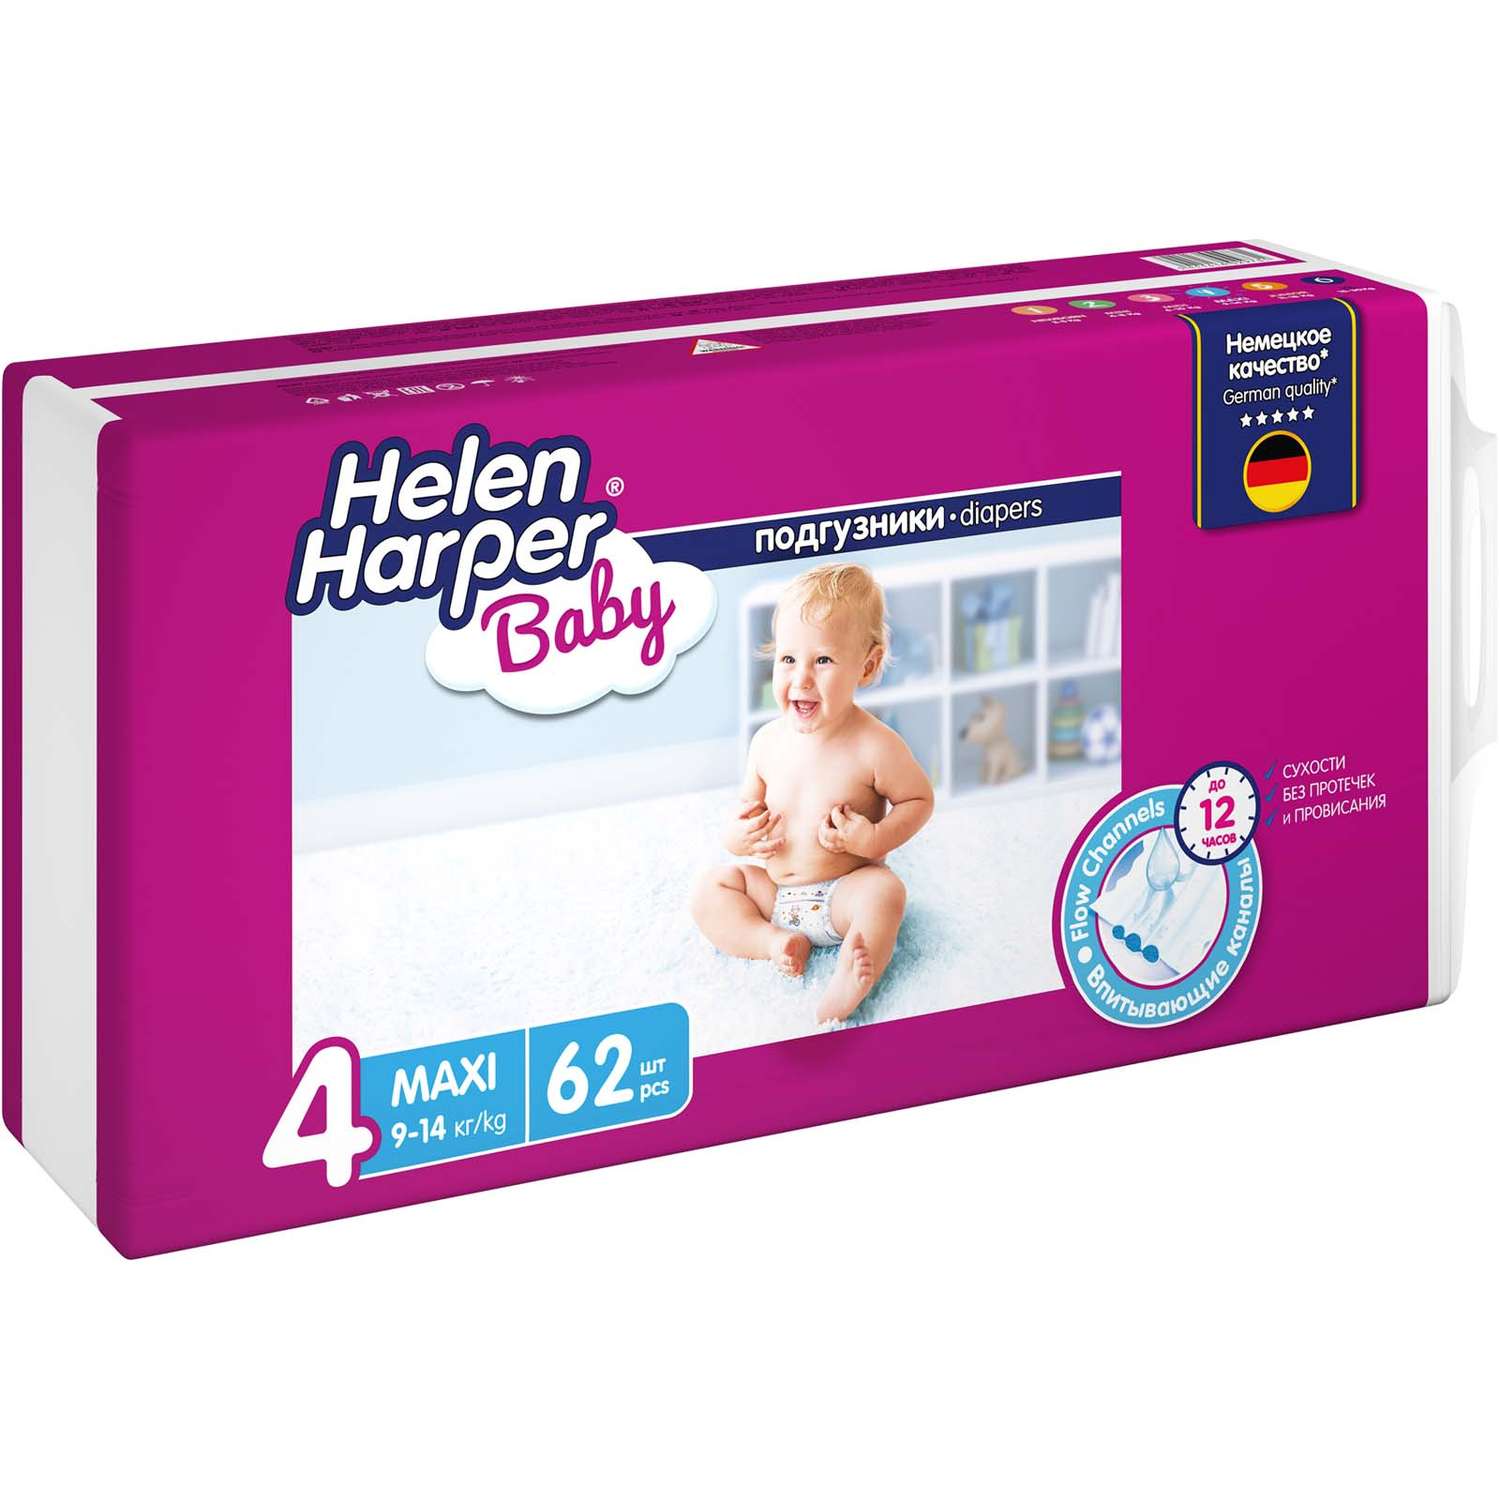 Подгузники Helen Harper Baby детские размер 4 Maxi 62 шт - фото 3